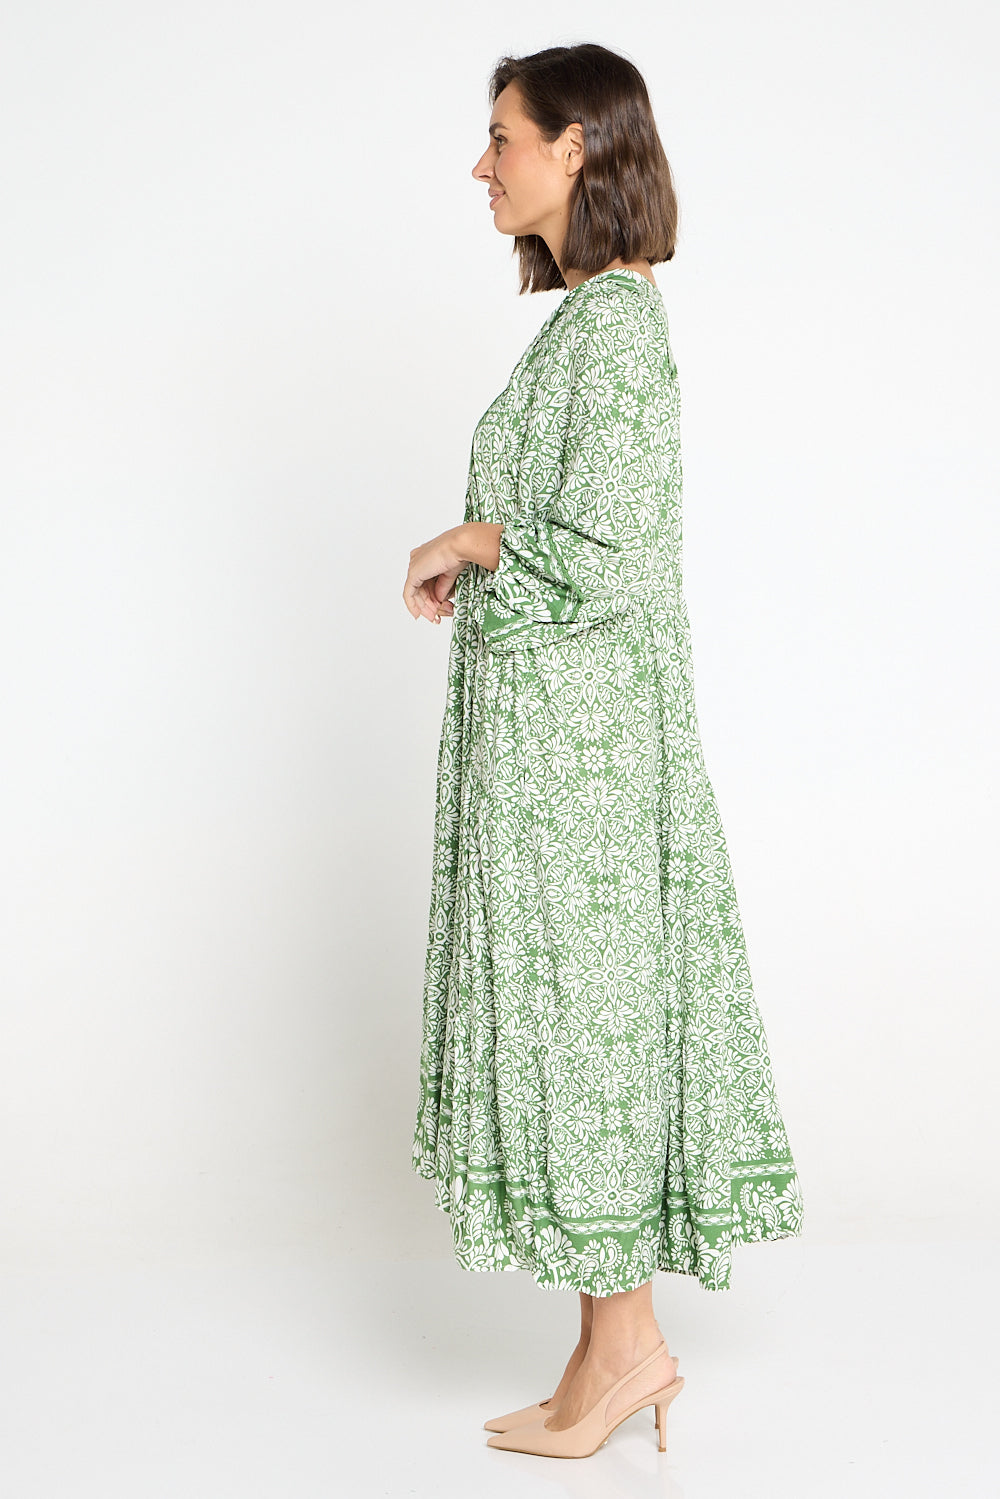 Aleria Dress - Green Floral